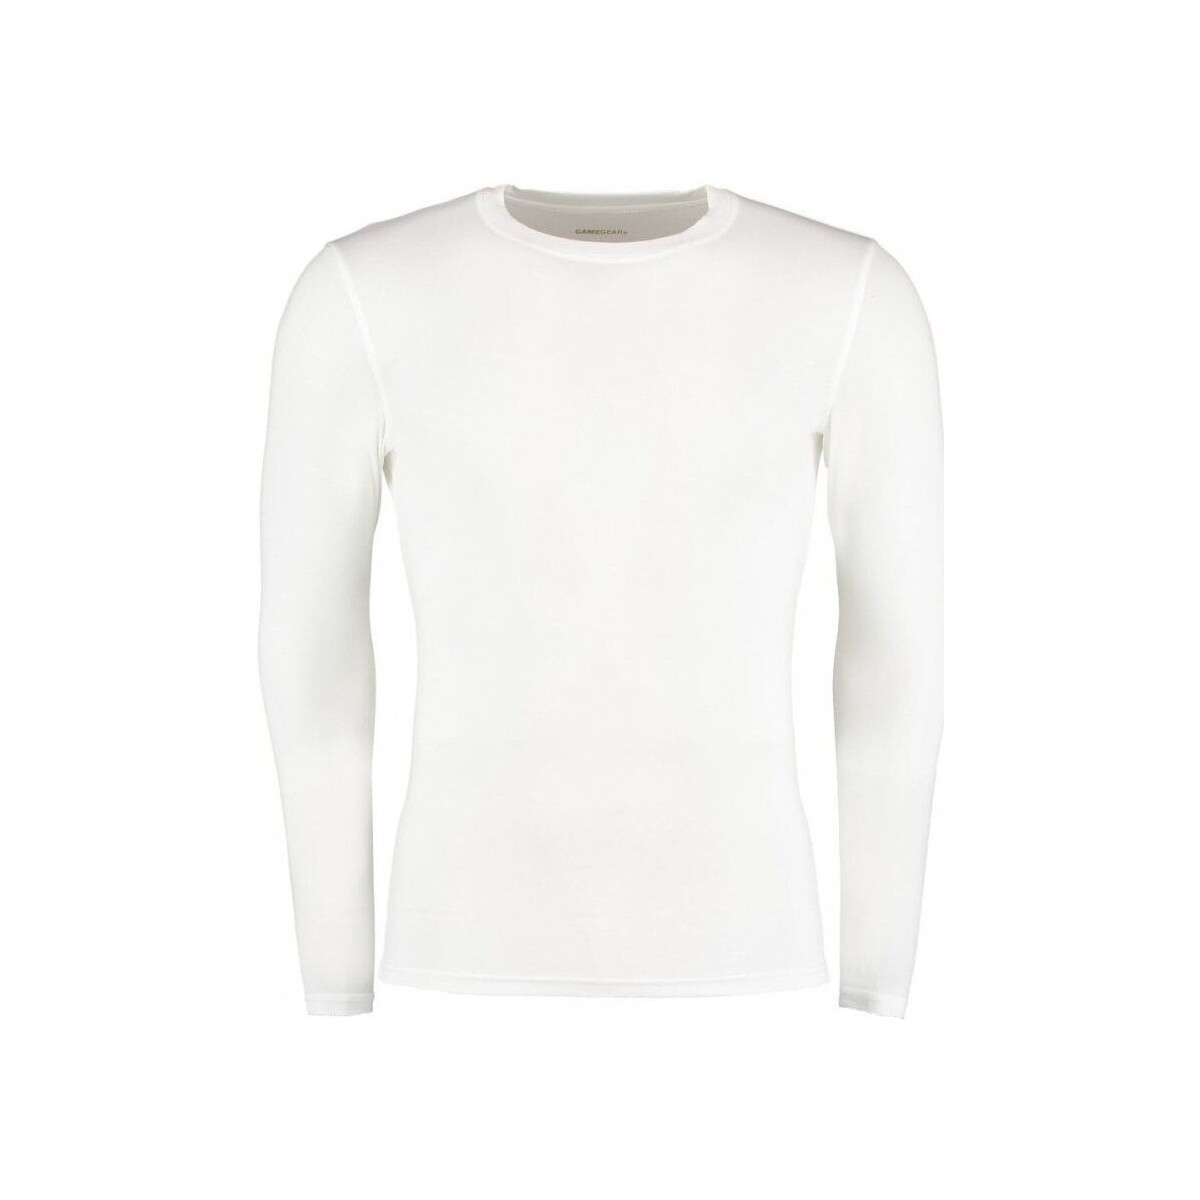 Vêtements Femme T-shirts manches longues Gamegear K979 Blanc